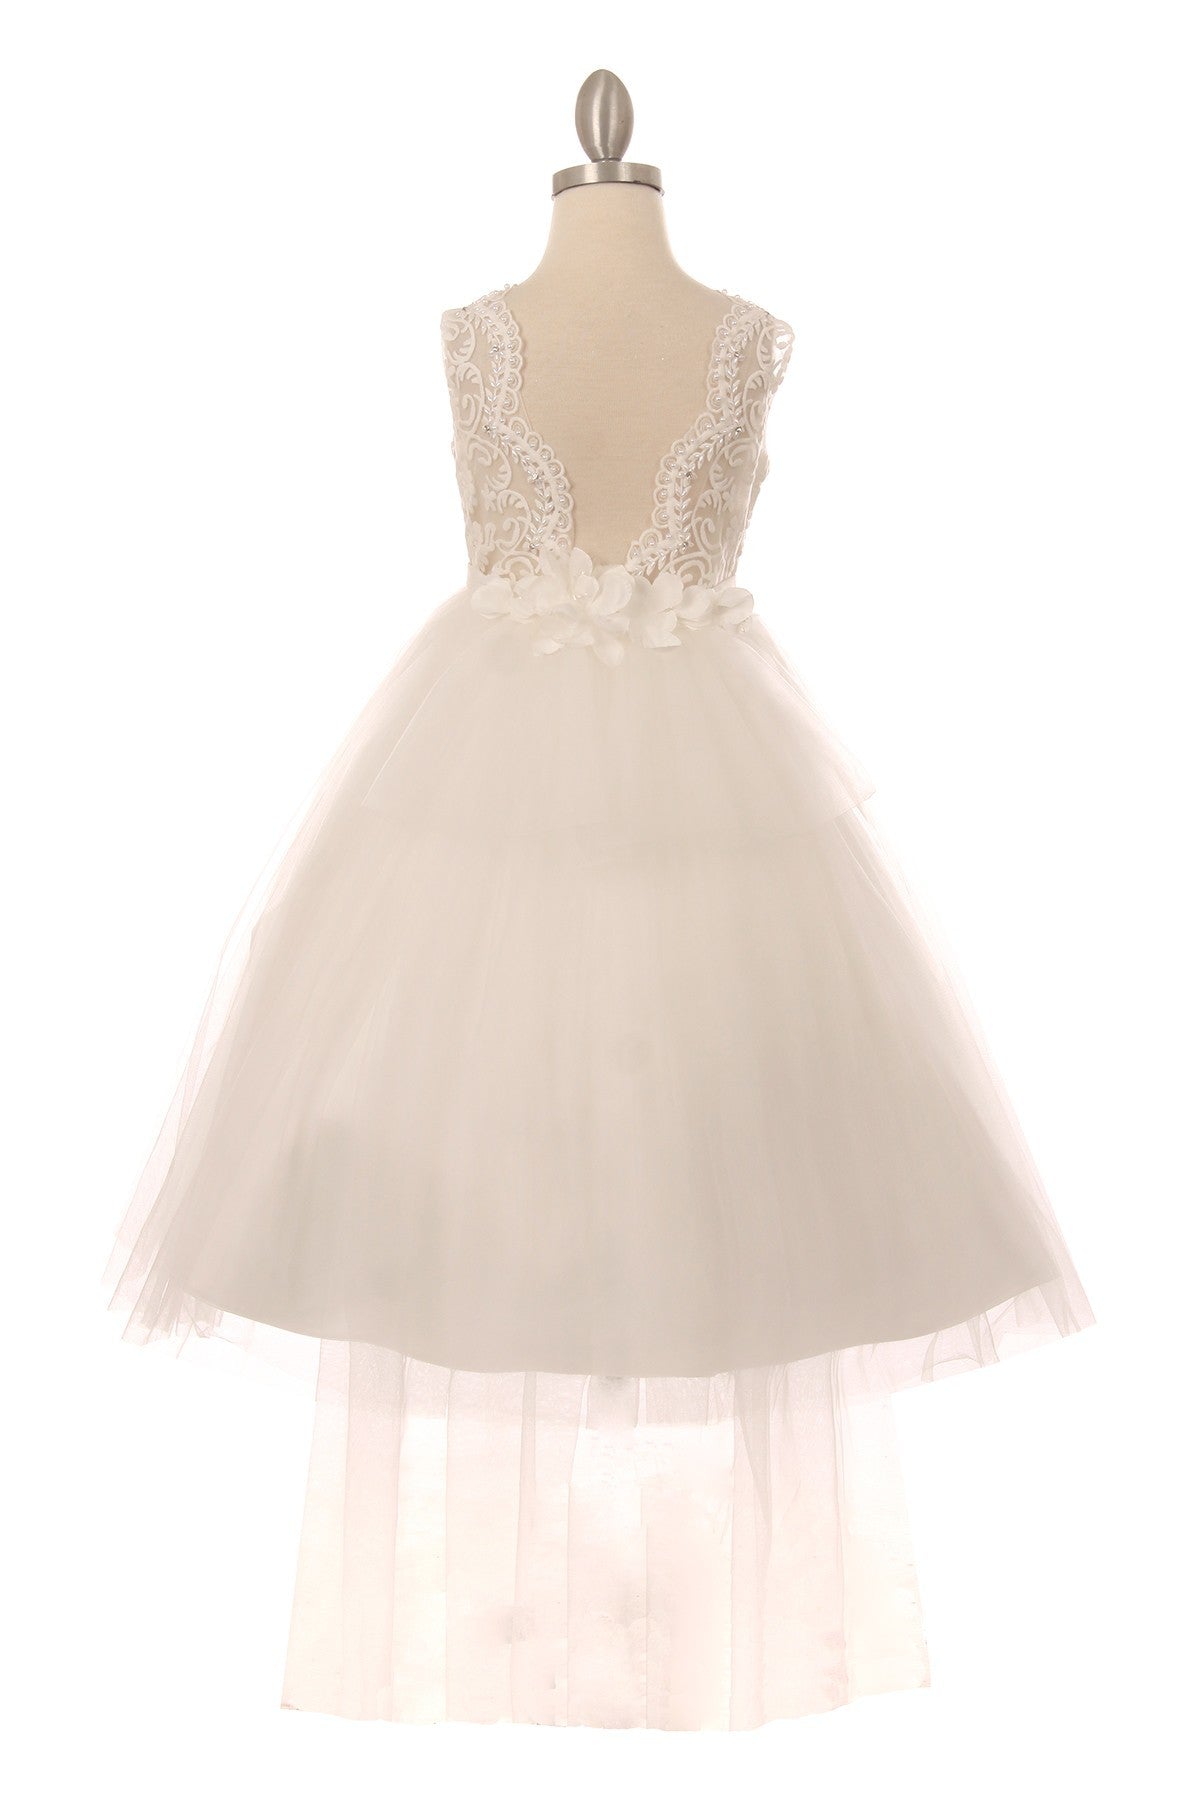 White Girl Dress,Girl Dress,white Dress,white Dress, Flower Girl, Wedding Flower Girl Dress,white Teen Dress